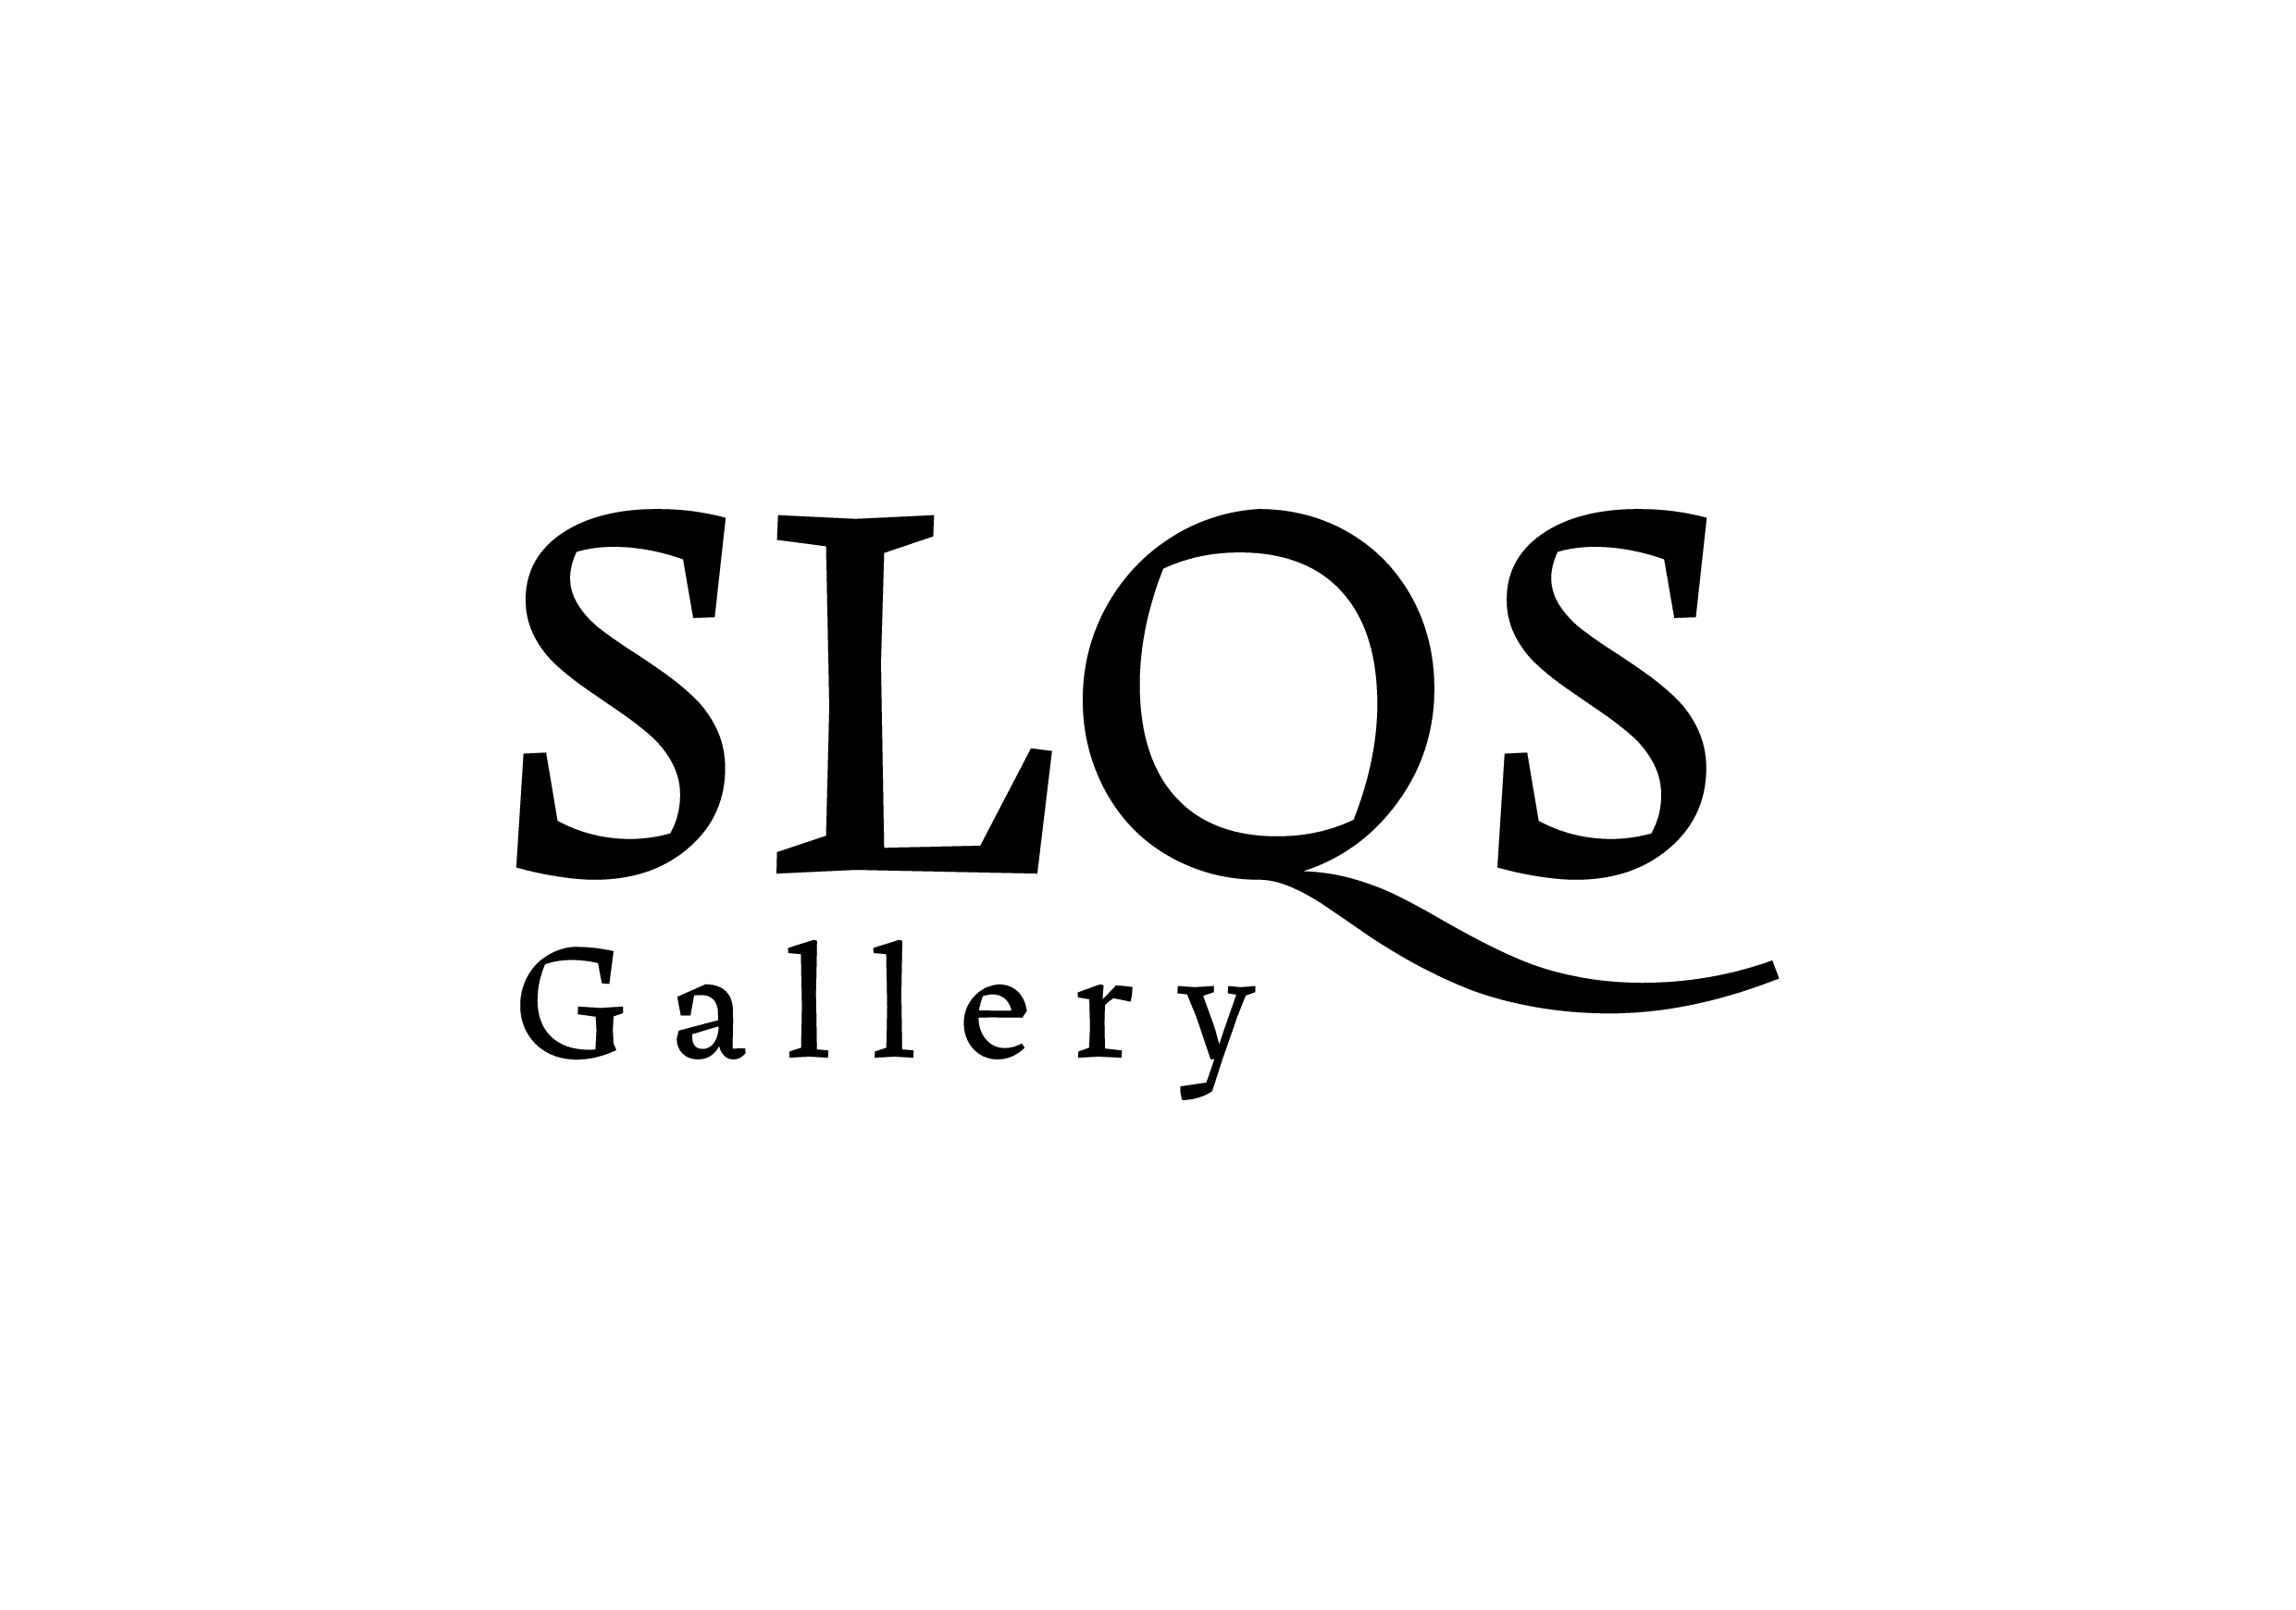 SLQS Gallery company logo